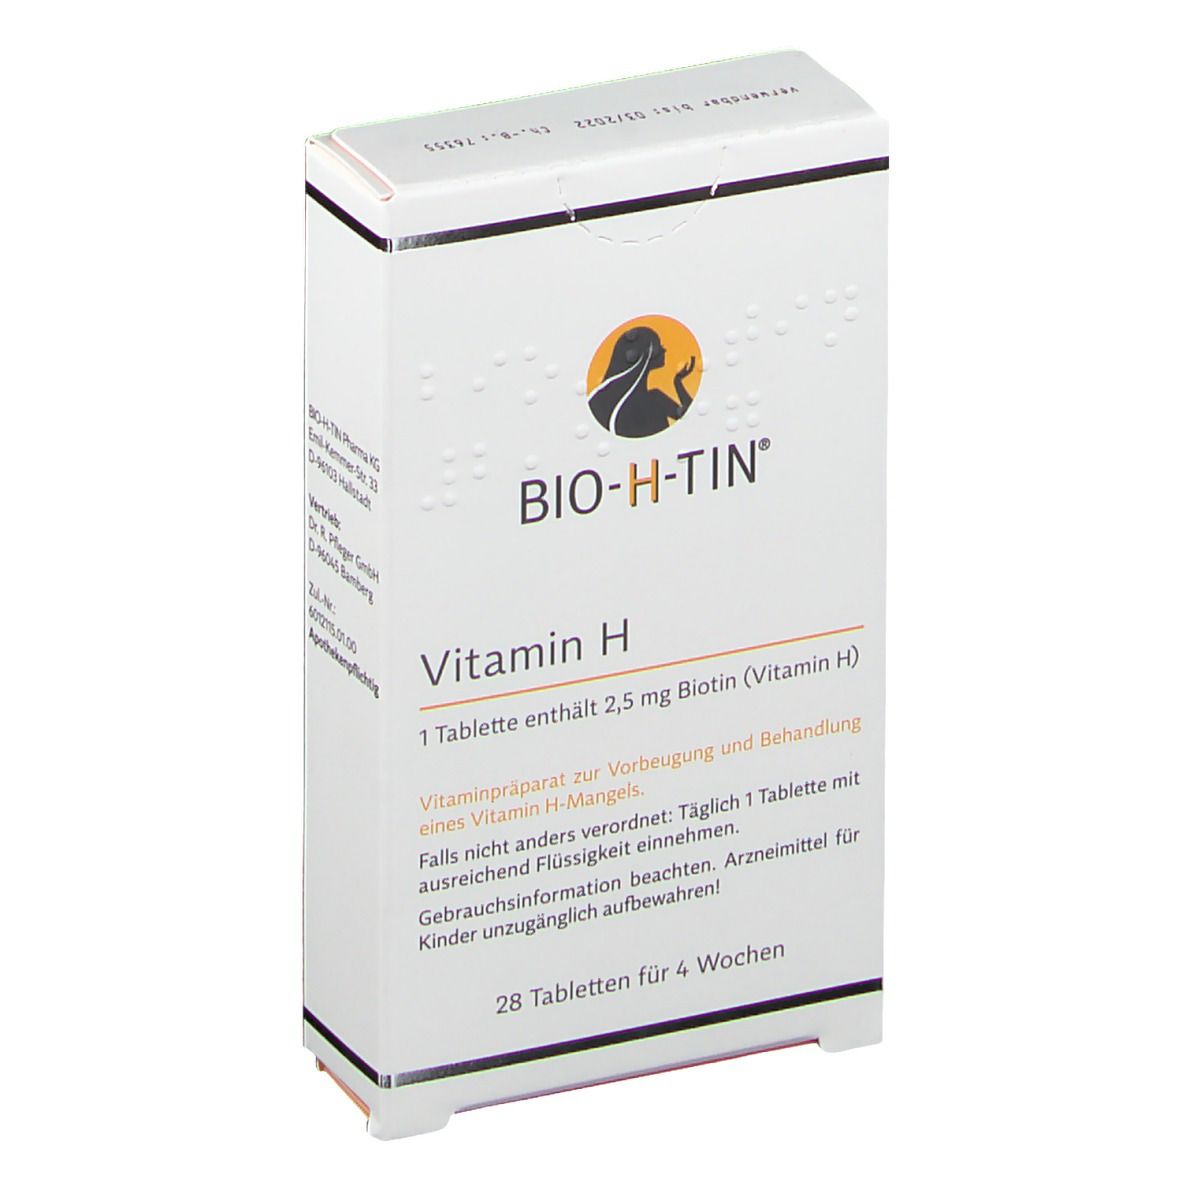 BIO-H-TIN® Vitamin H 2,5 mg für 4 Wochen